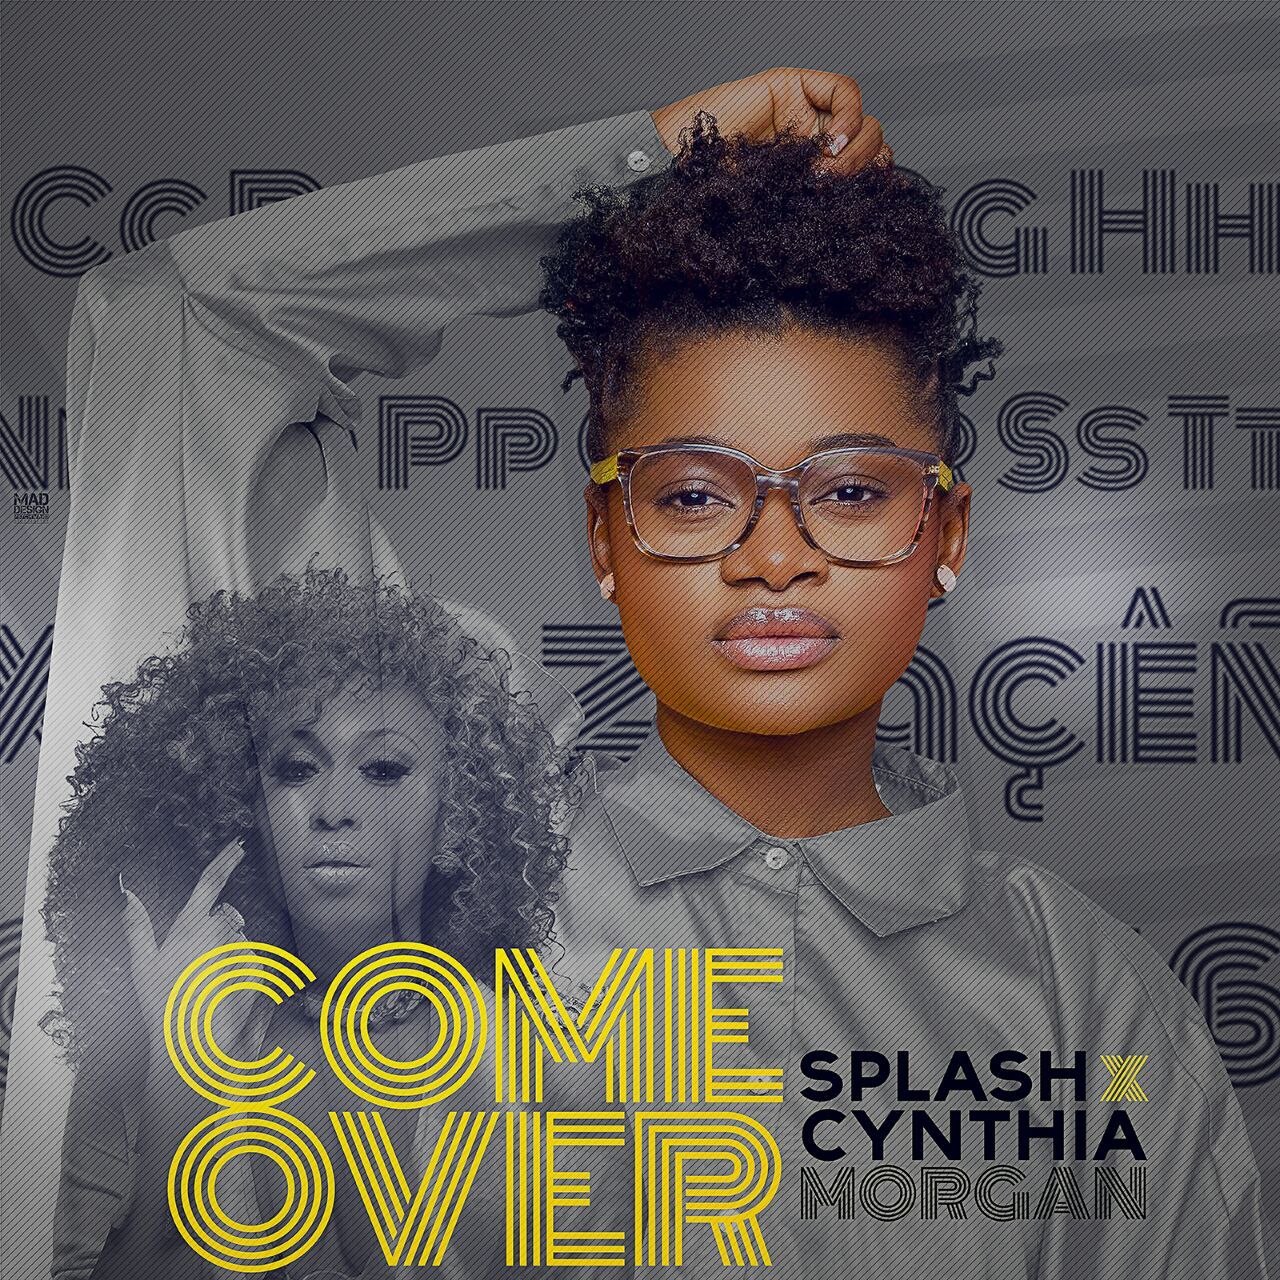 Splash ft. Cynthia Morgan - COME OVER (prod. by ClassicMusik) Artwork | AceWorldTeam.com